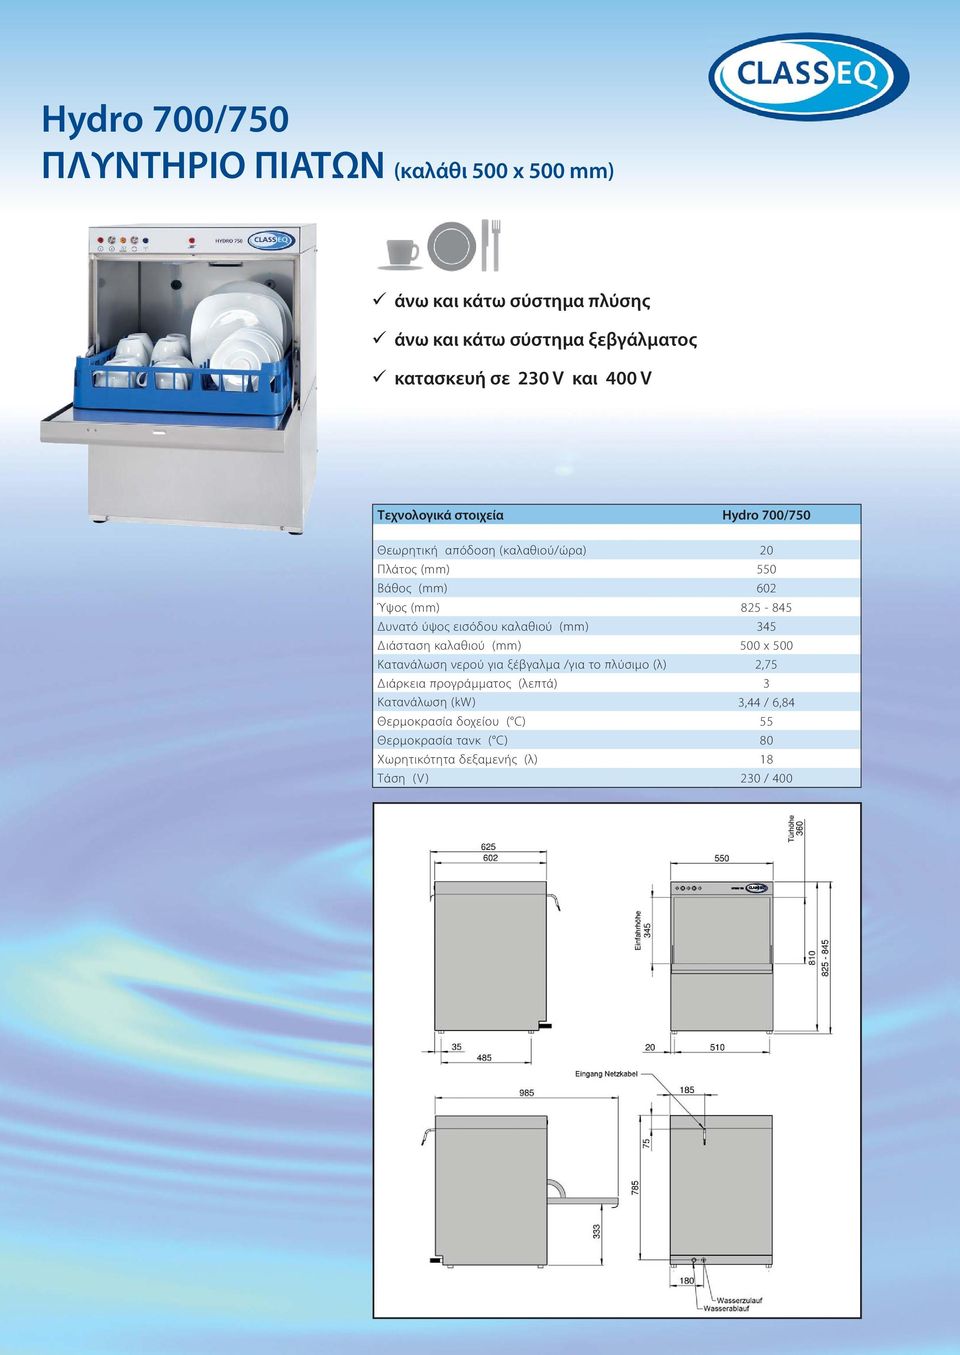 εισόδου καλαθιού (mm) 345 Διάσταση καλαθιού (mm) 500 x 500 Κατανάλωση νερού για ξέβγαλμα /για το πλύσιμο (λ) 2,75 Διάρκεια προγράμματος